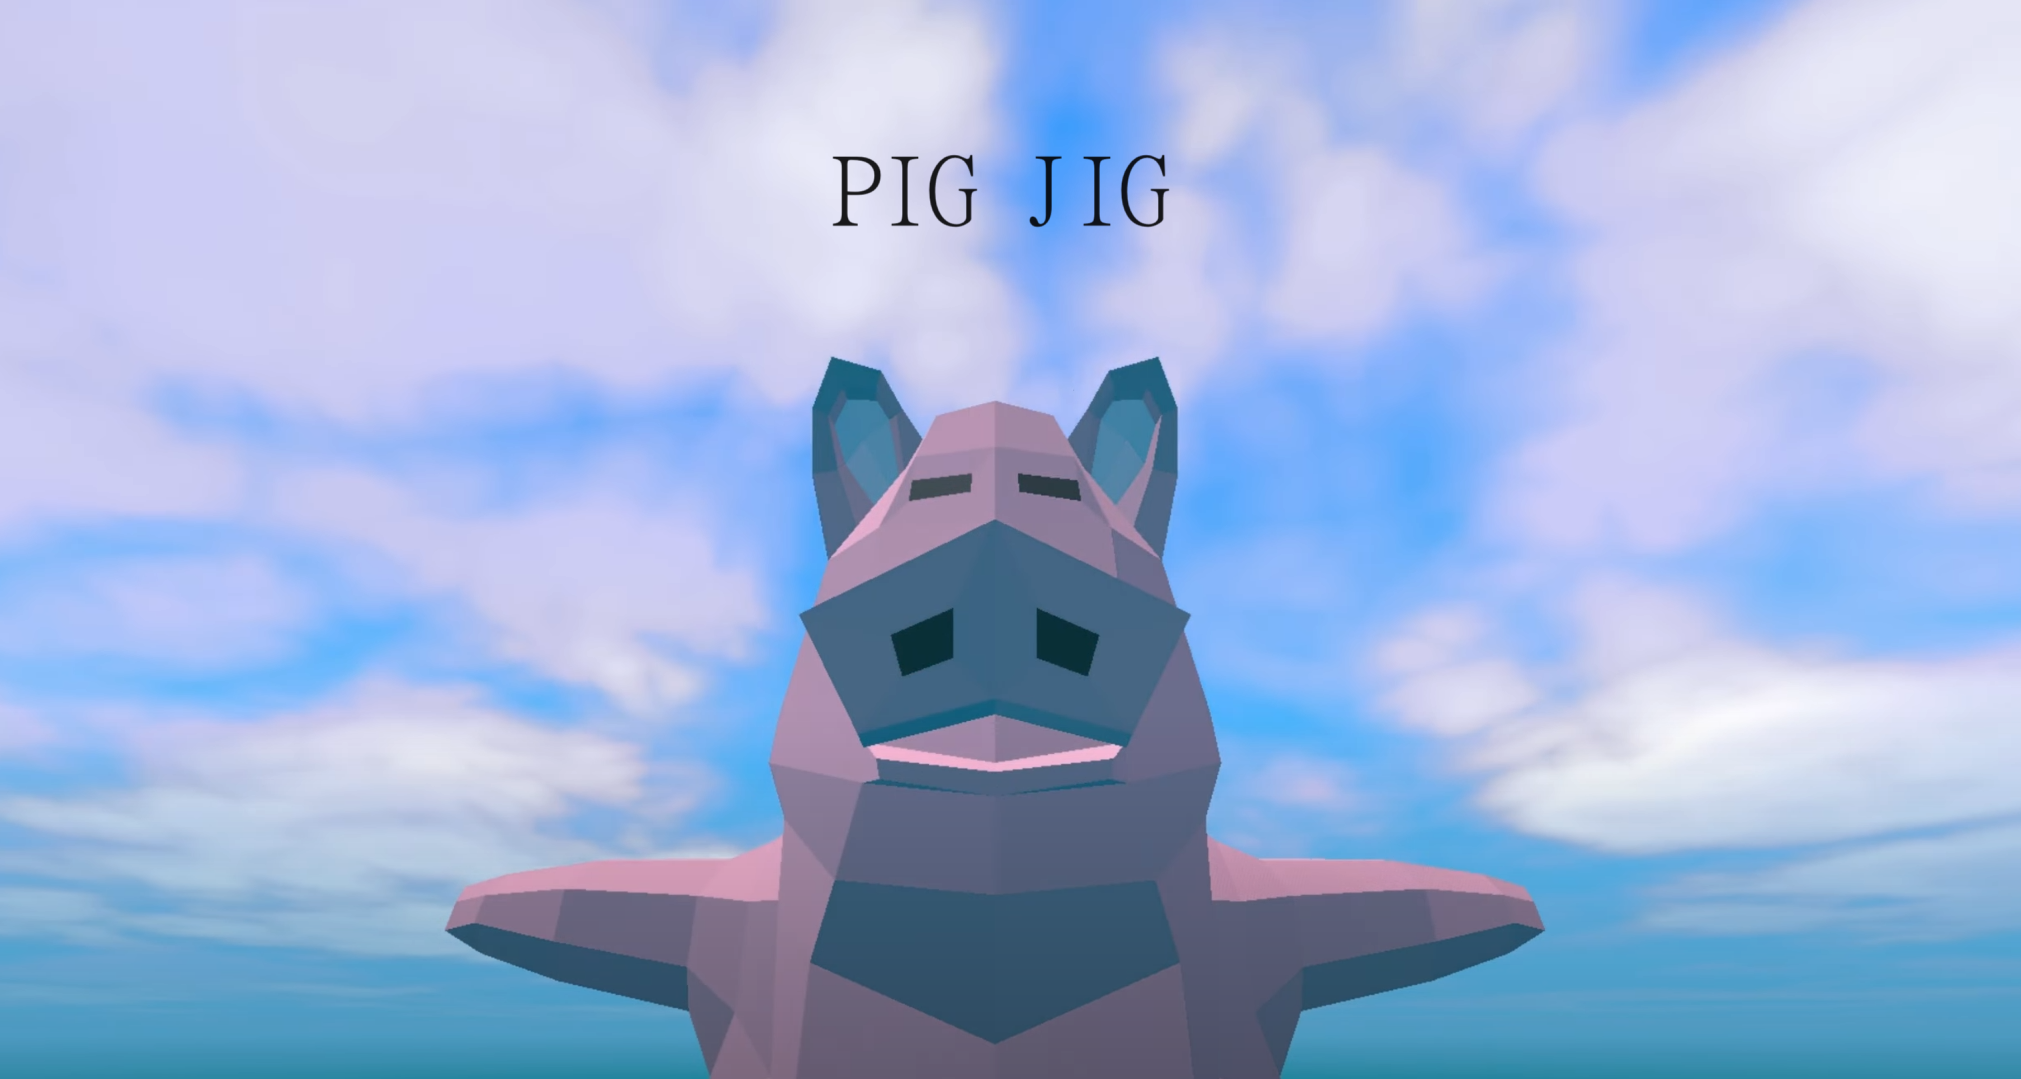 Pig Jig